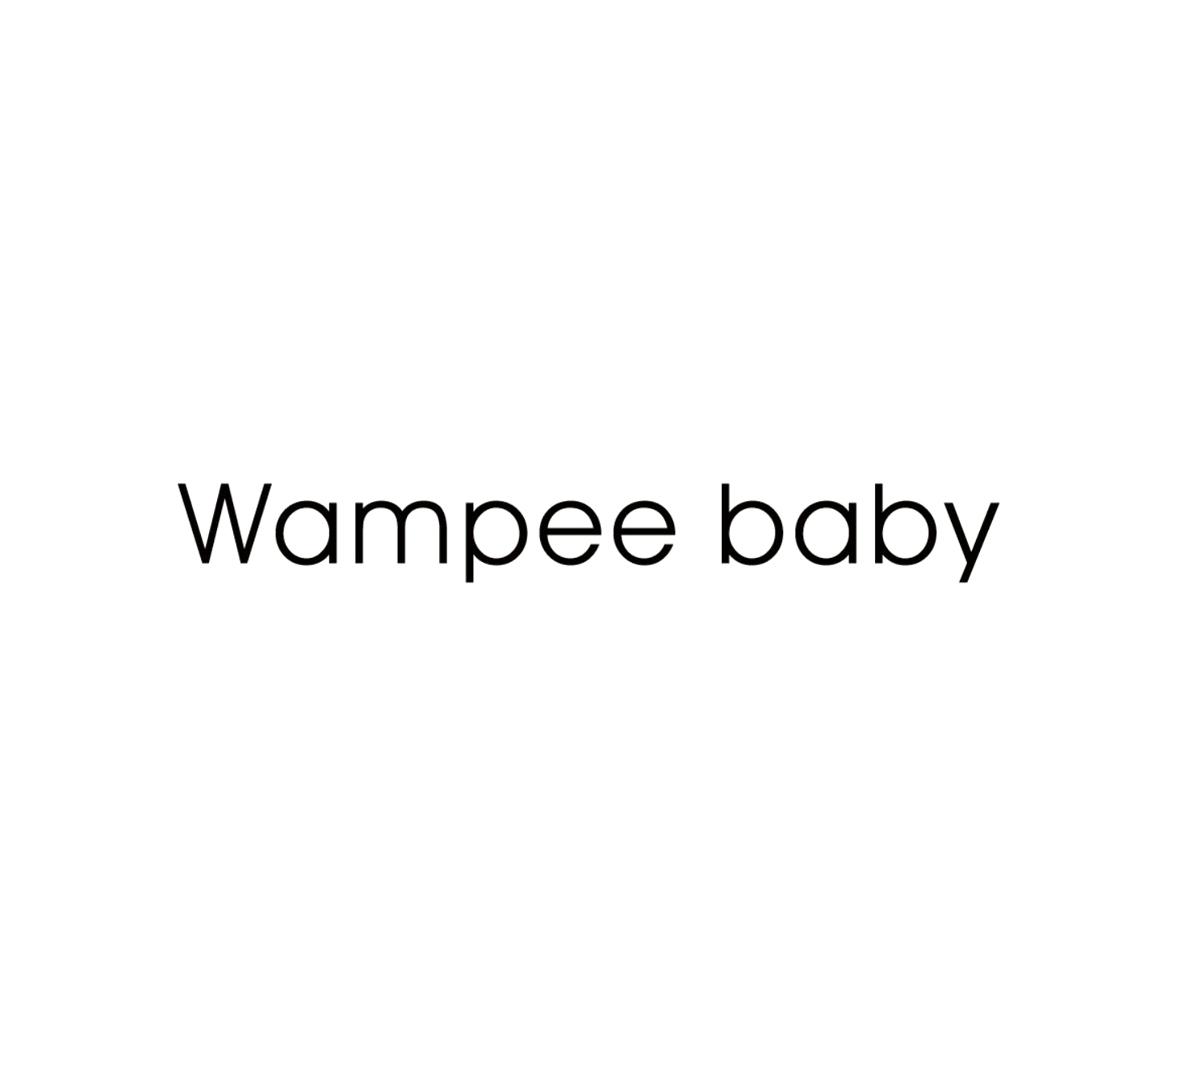 WAMPEE BABY